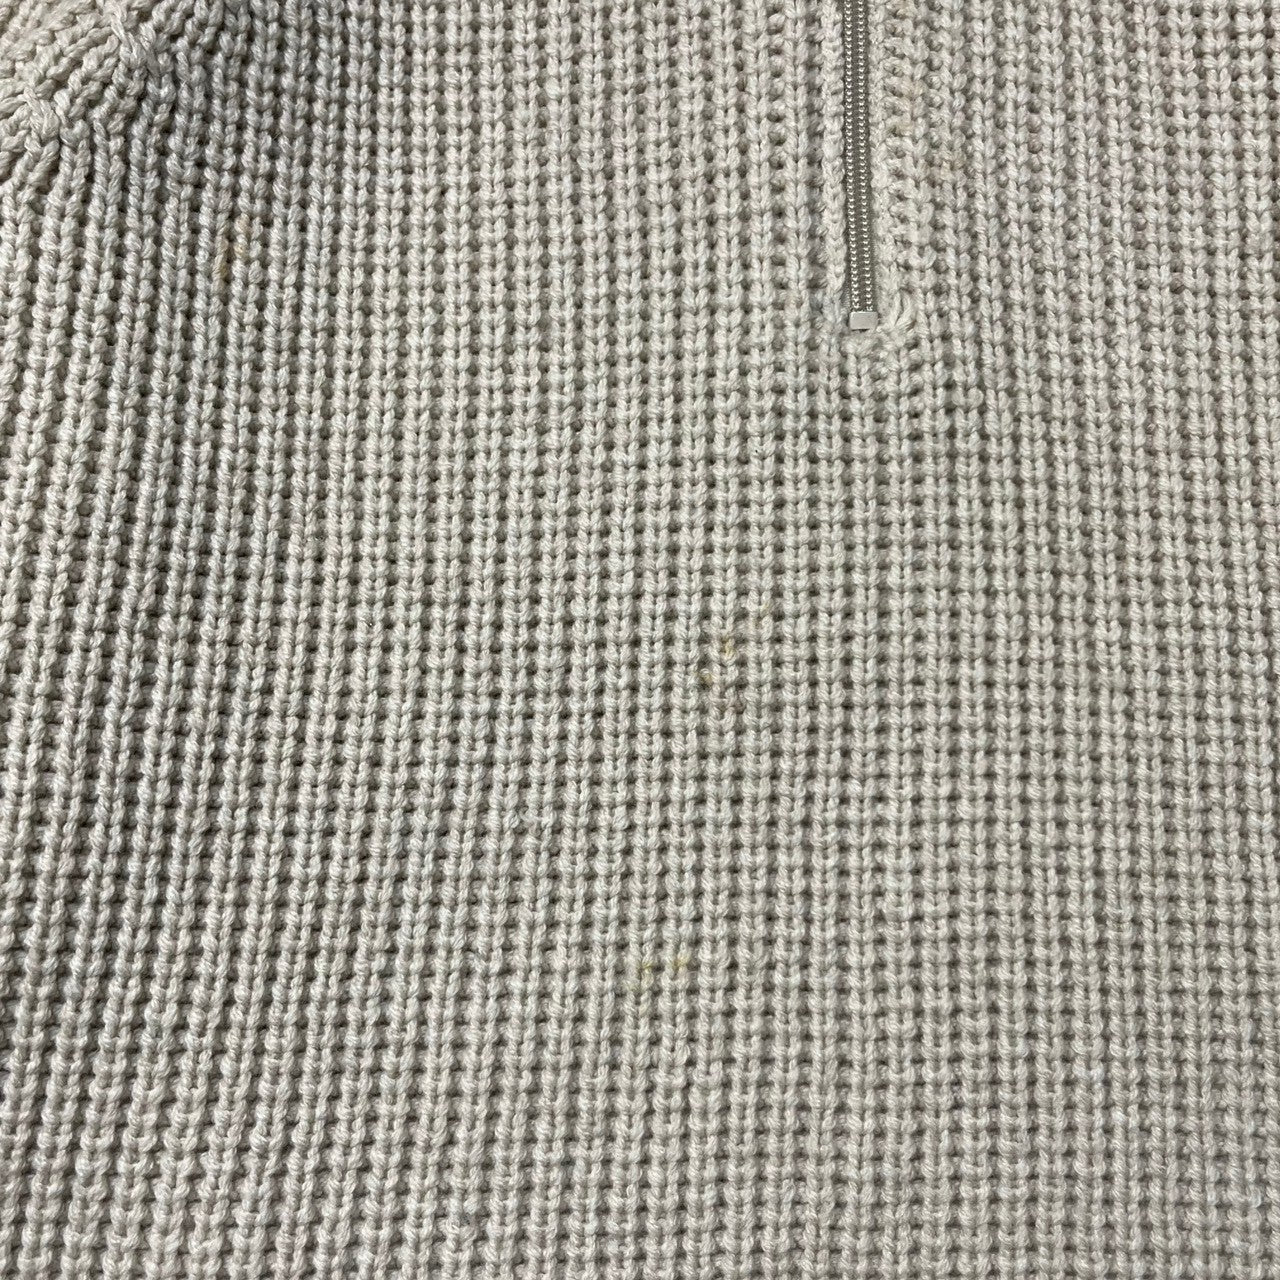 URU(ウル) half zip knit ハーフジップ ニット セーター ローゲージ 厚手 ウール カシミヤ シルク 17FUK03 FREE アイボリー